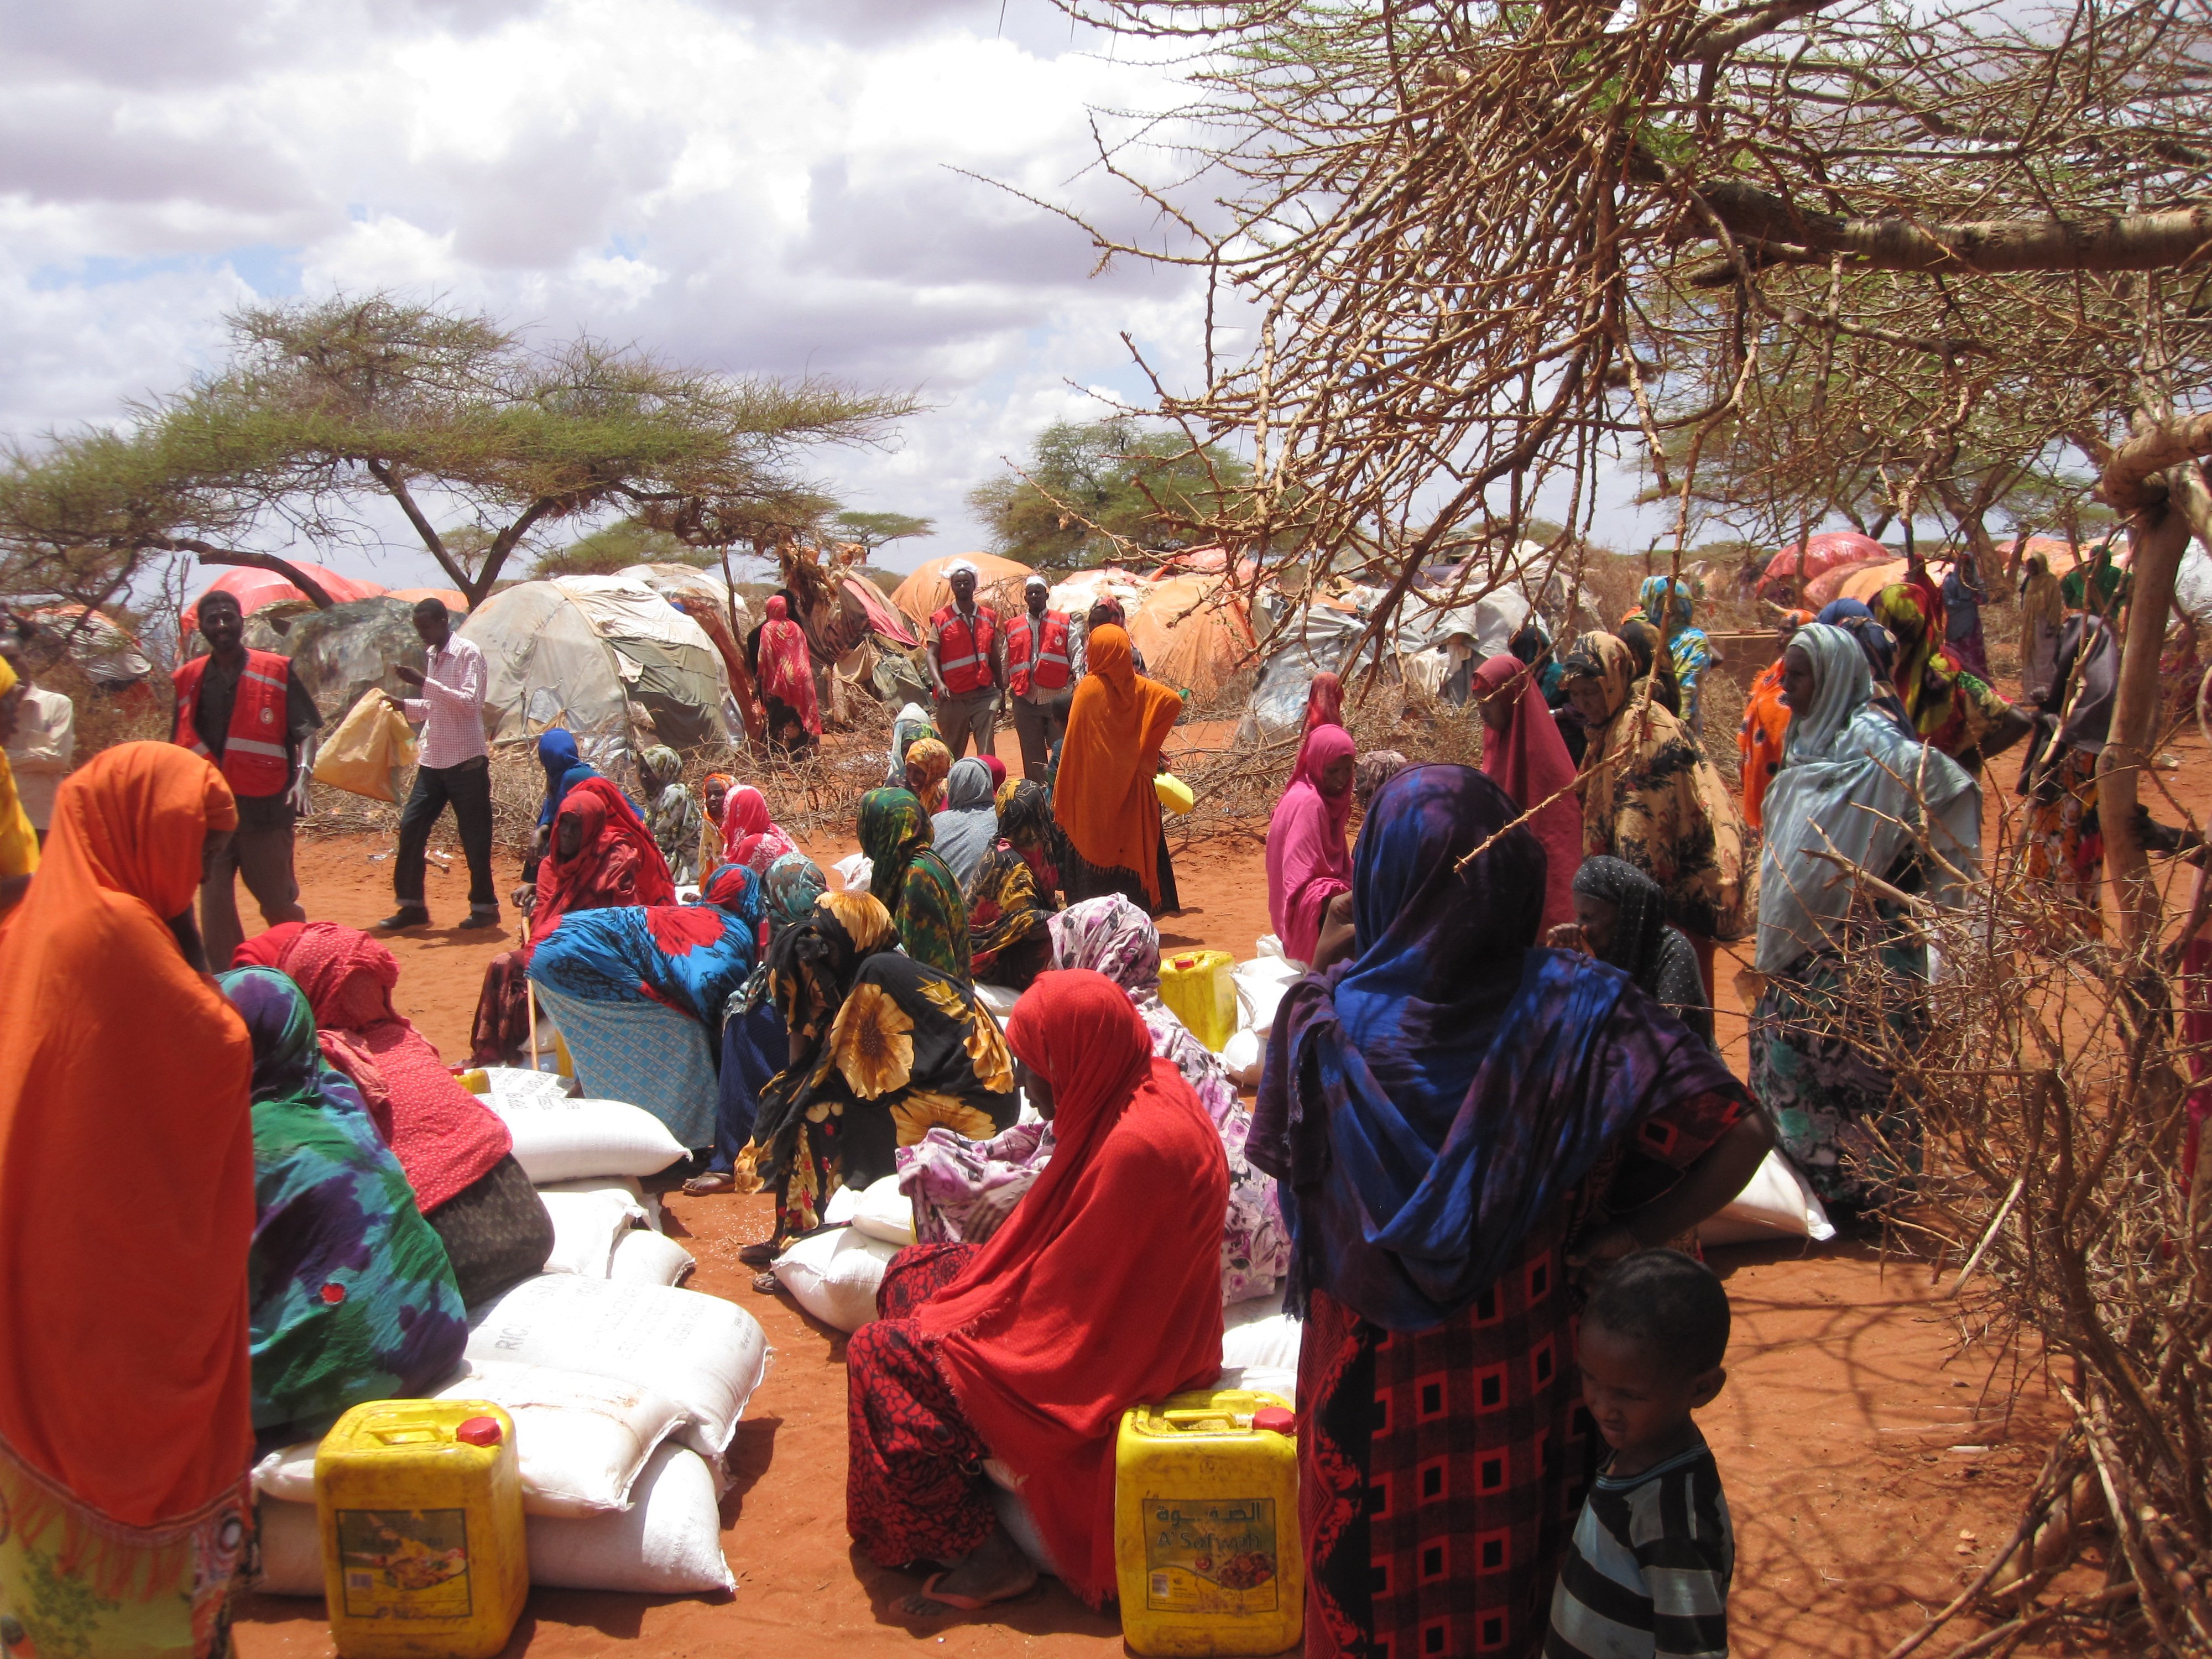 poverty in somalia essay